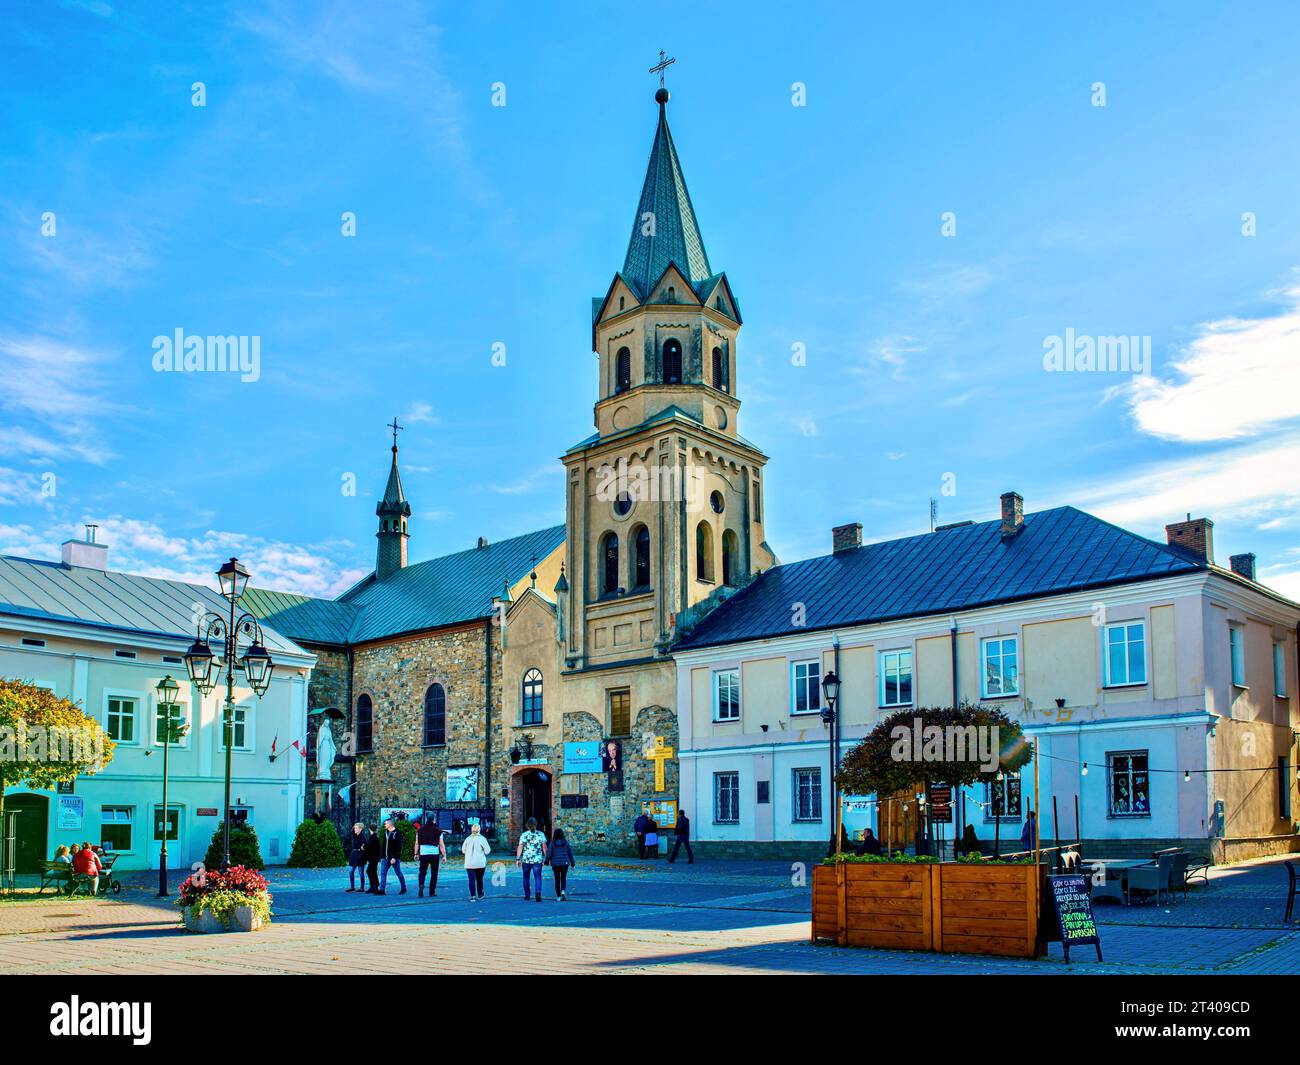 Blick auf die Kirche der Heiligkreuzerhöhung auf dem Hauptplatz der Stadt - Rynok-Platz. Stockfoto